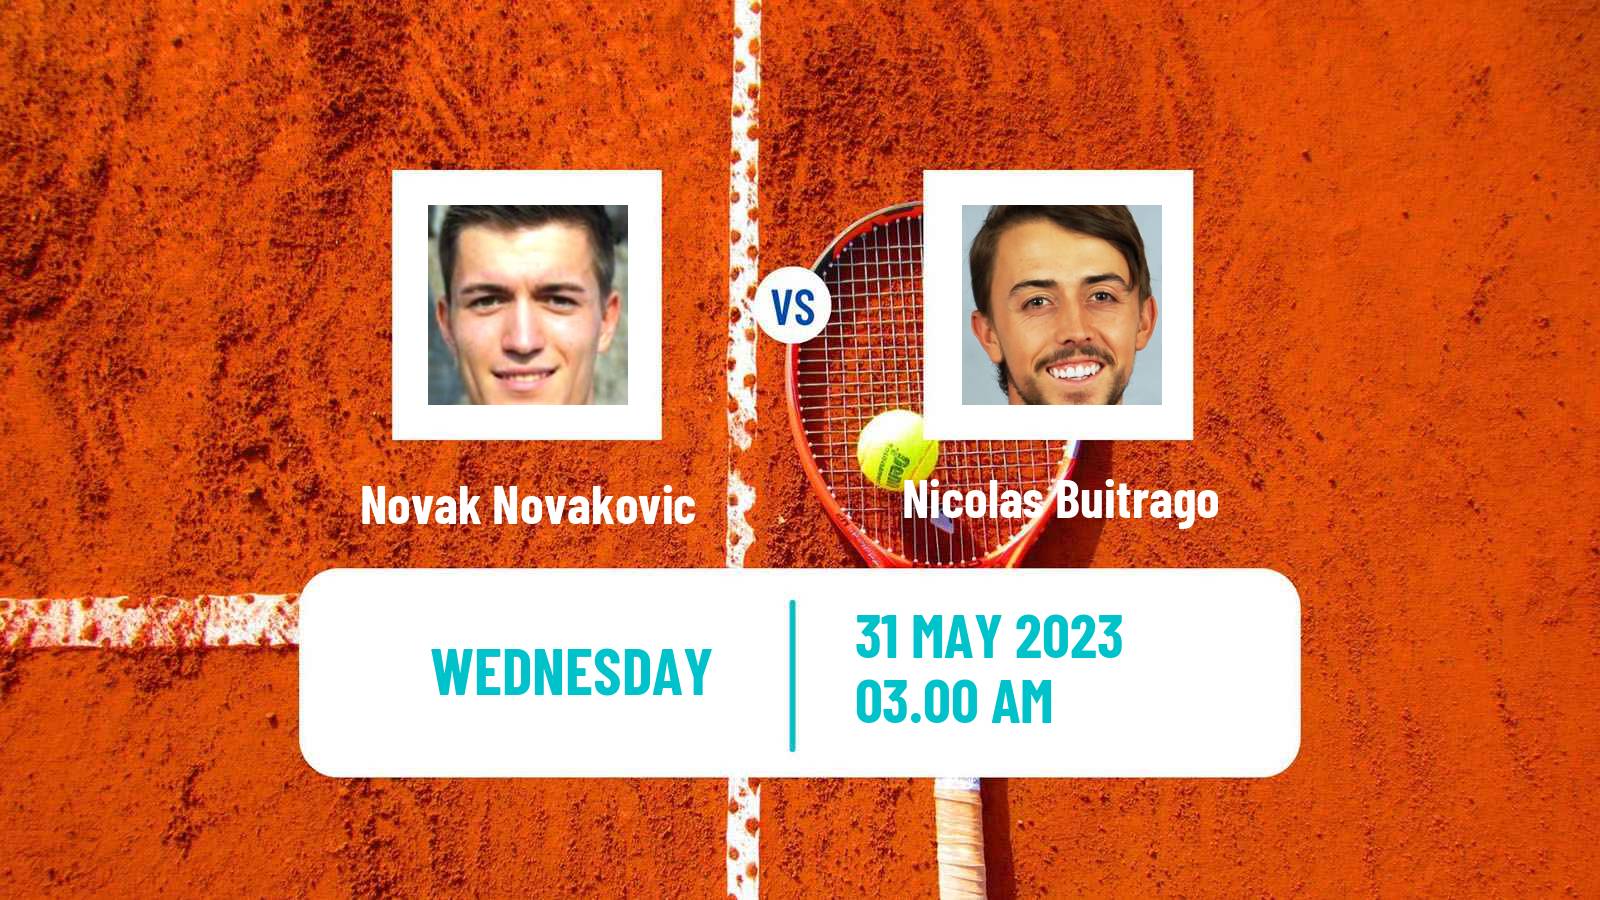 Tennis ITF M15 Kursumlijska Banja 4 Men Novak Novakovic - Nicolas Buitrago